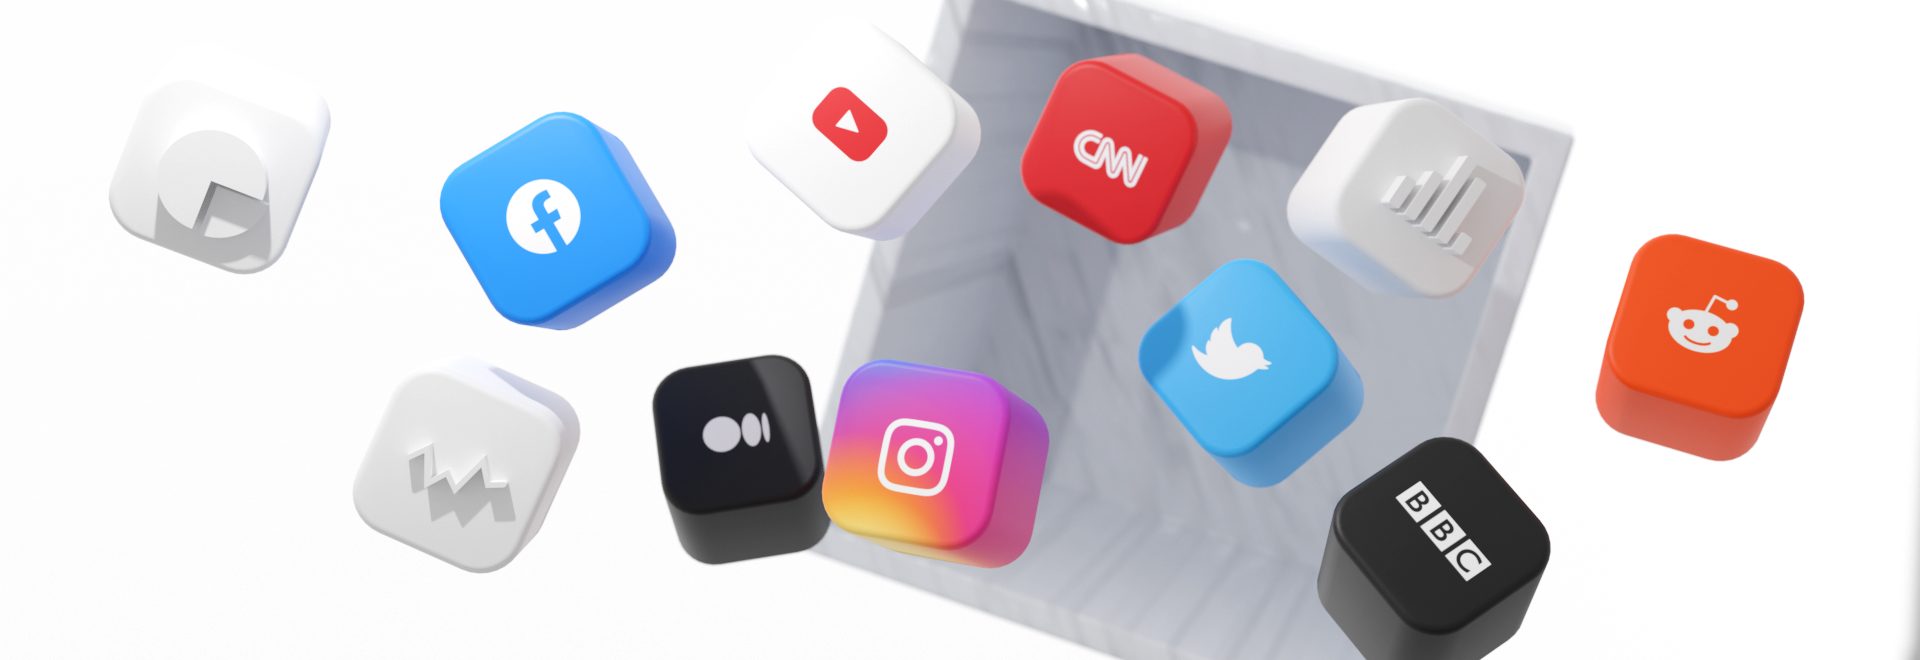 Przegląd mediów społecznościowych SentiOne – Październik/Listopad 2021